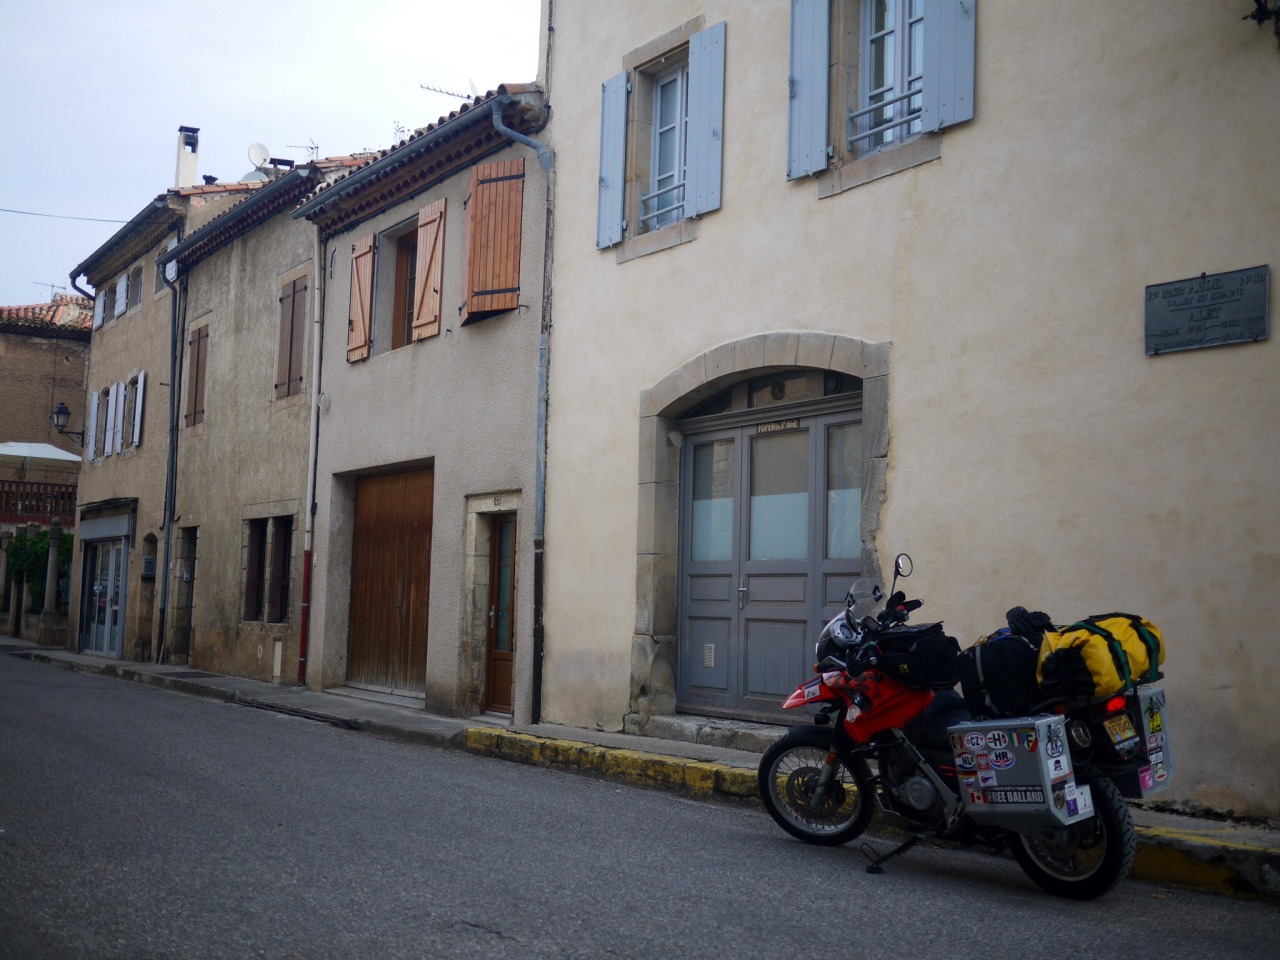 The Village of Alet Les Bains